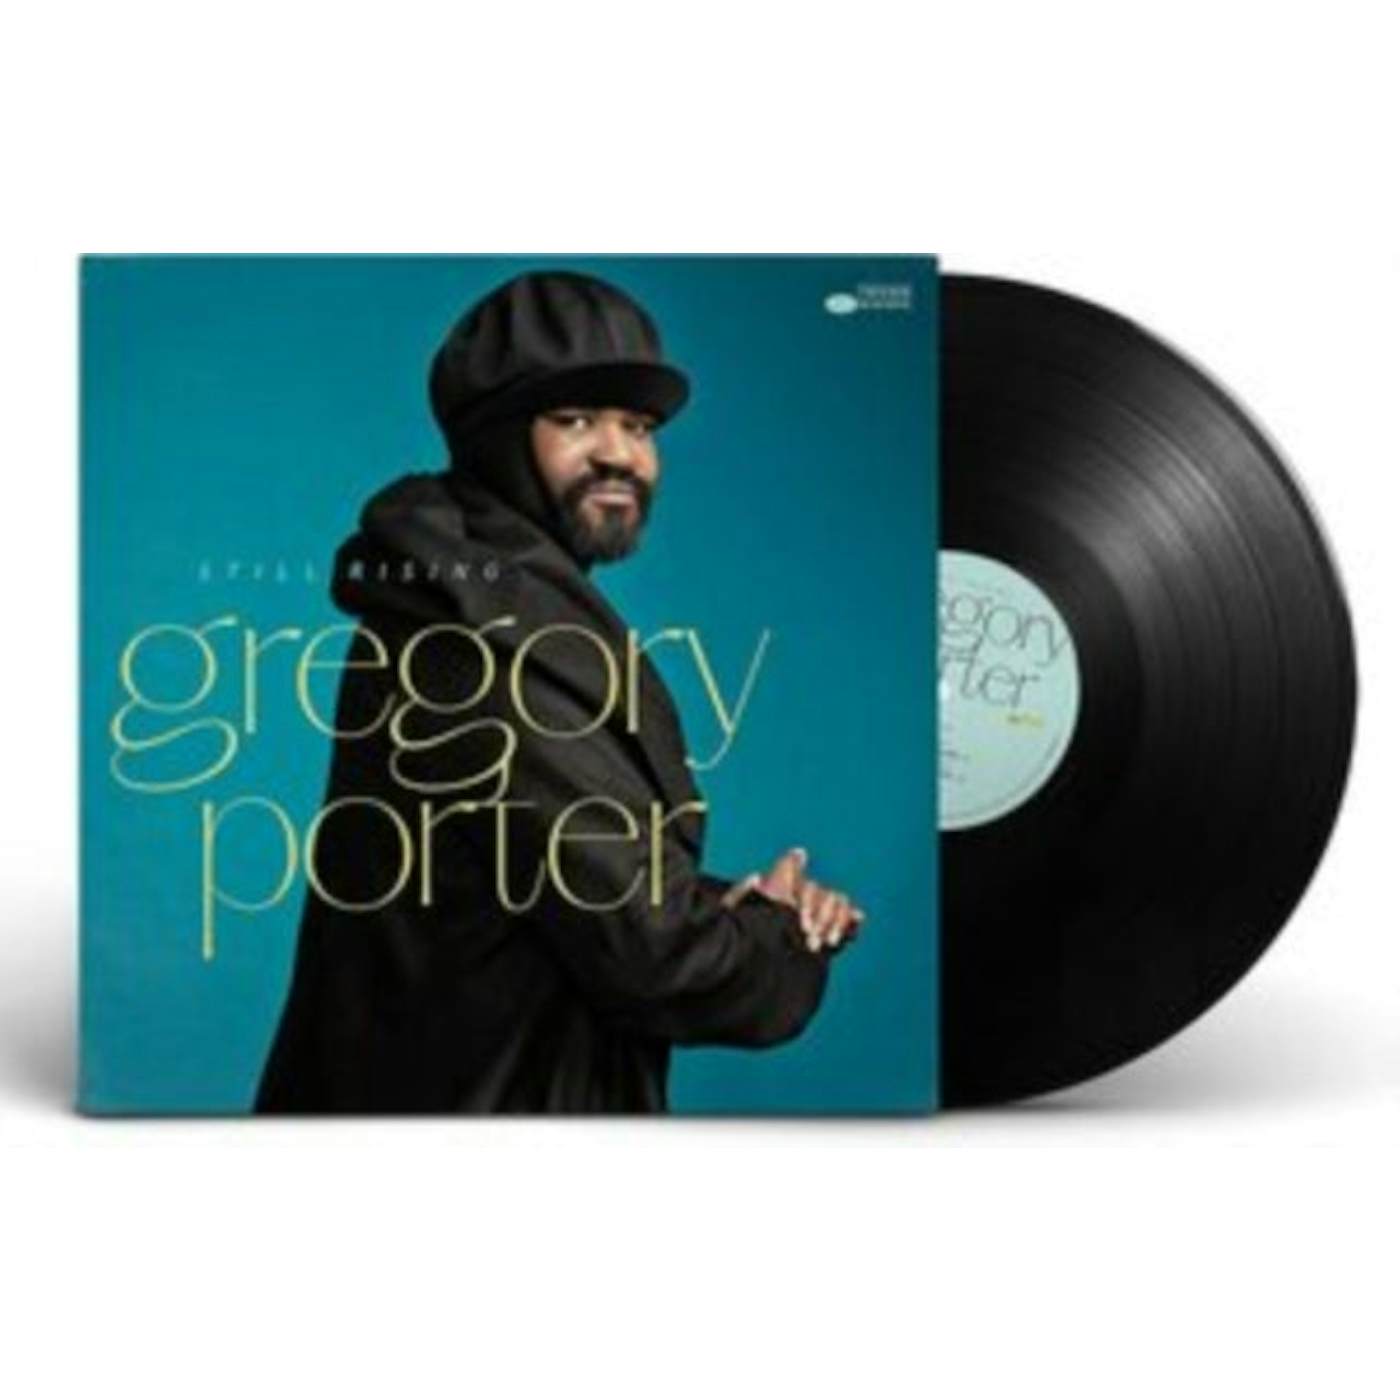 Gregory Porter LP Vinyl Record - Still Rising (Internatio)